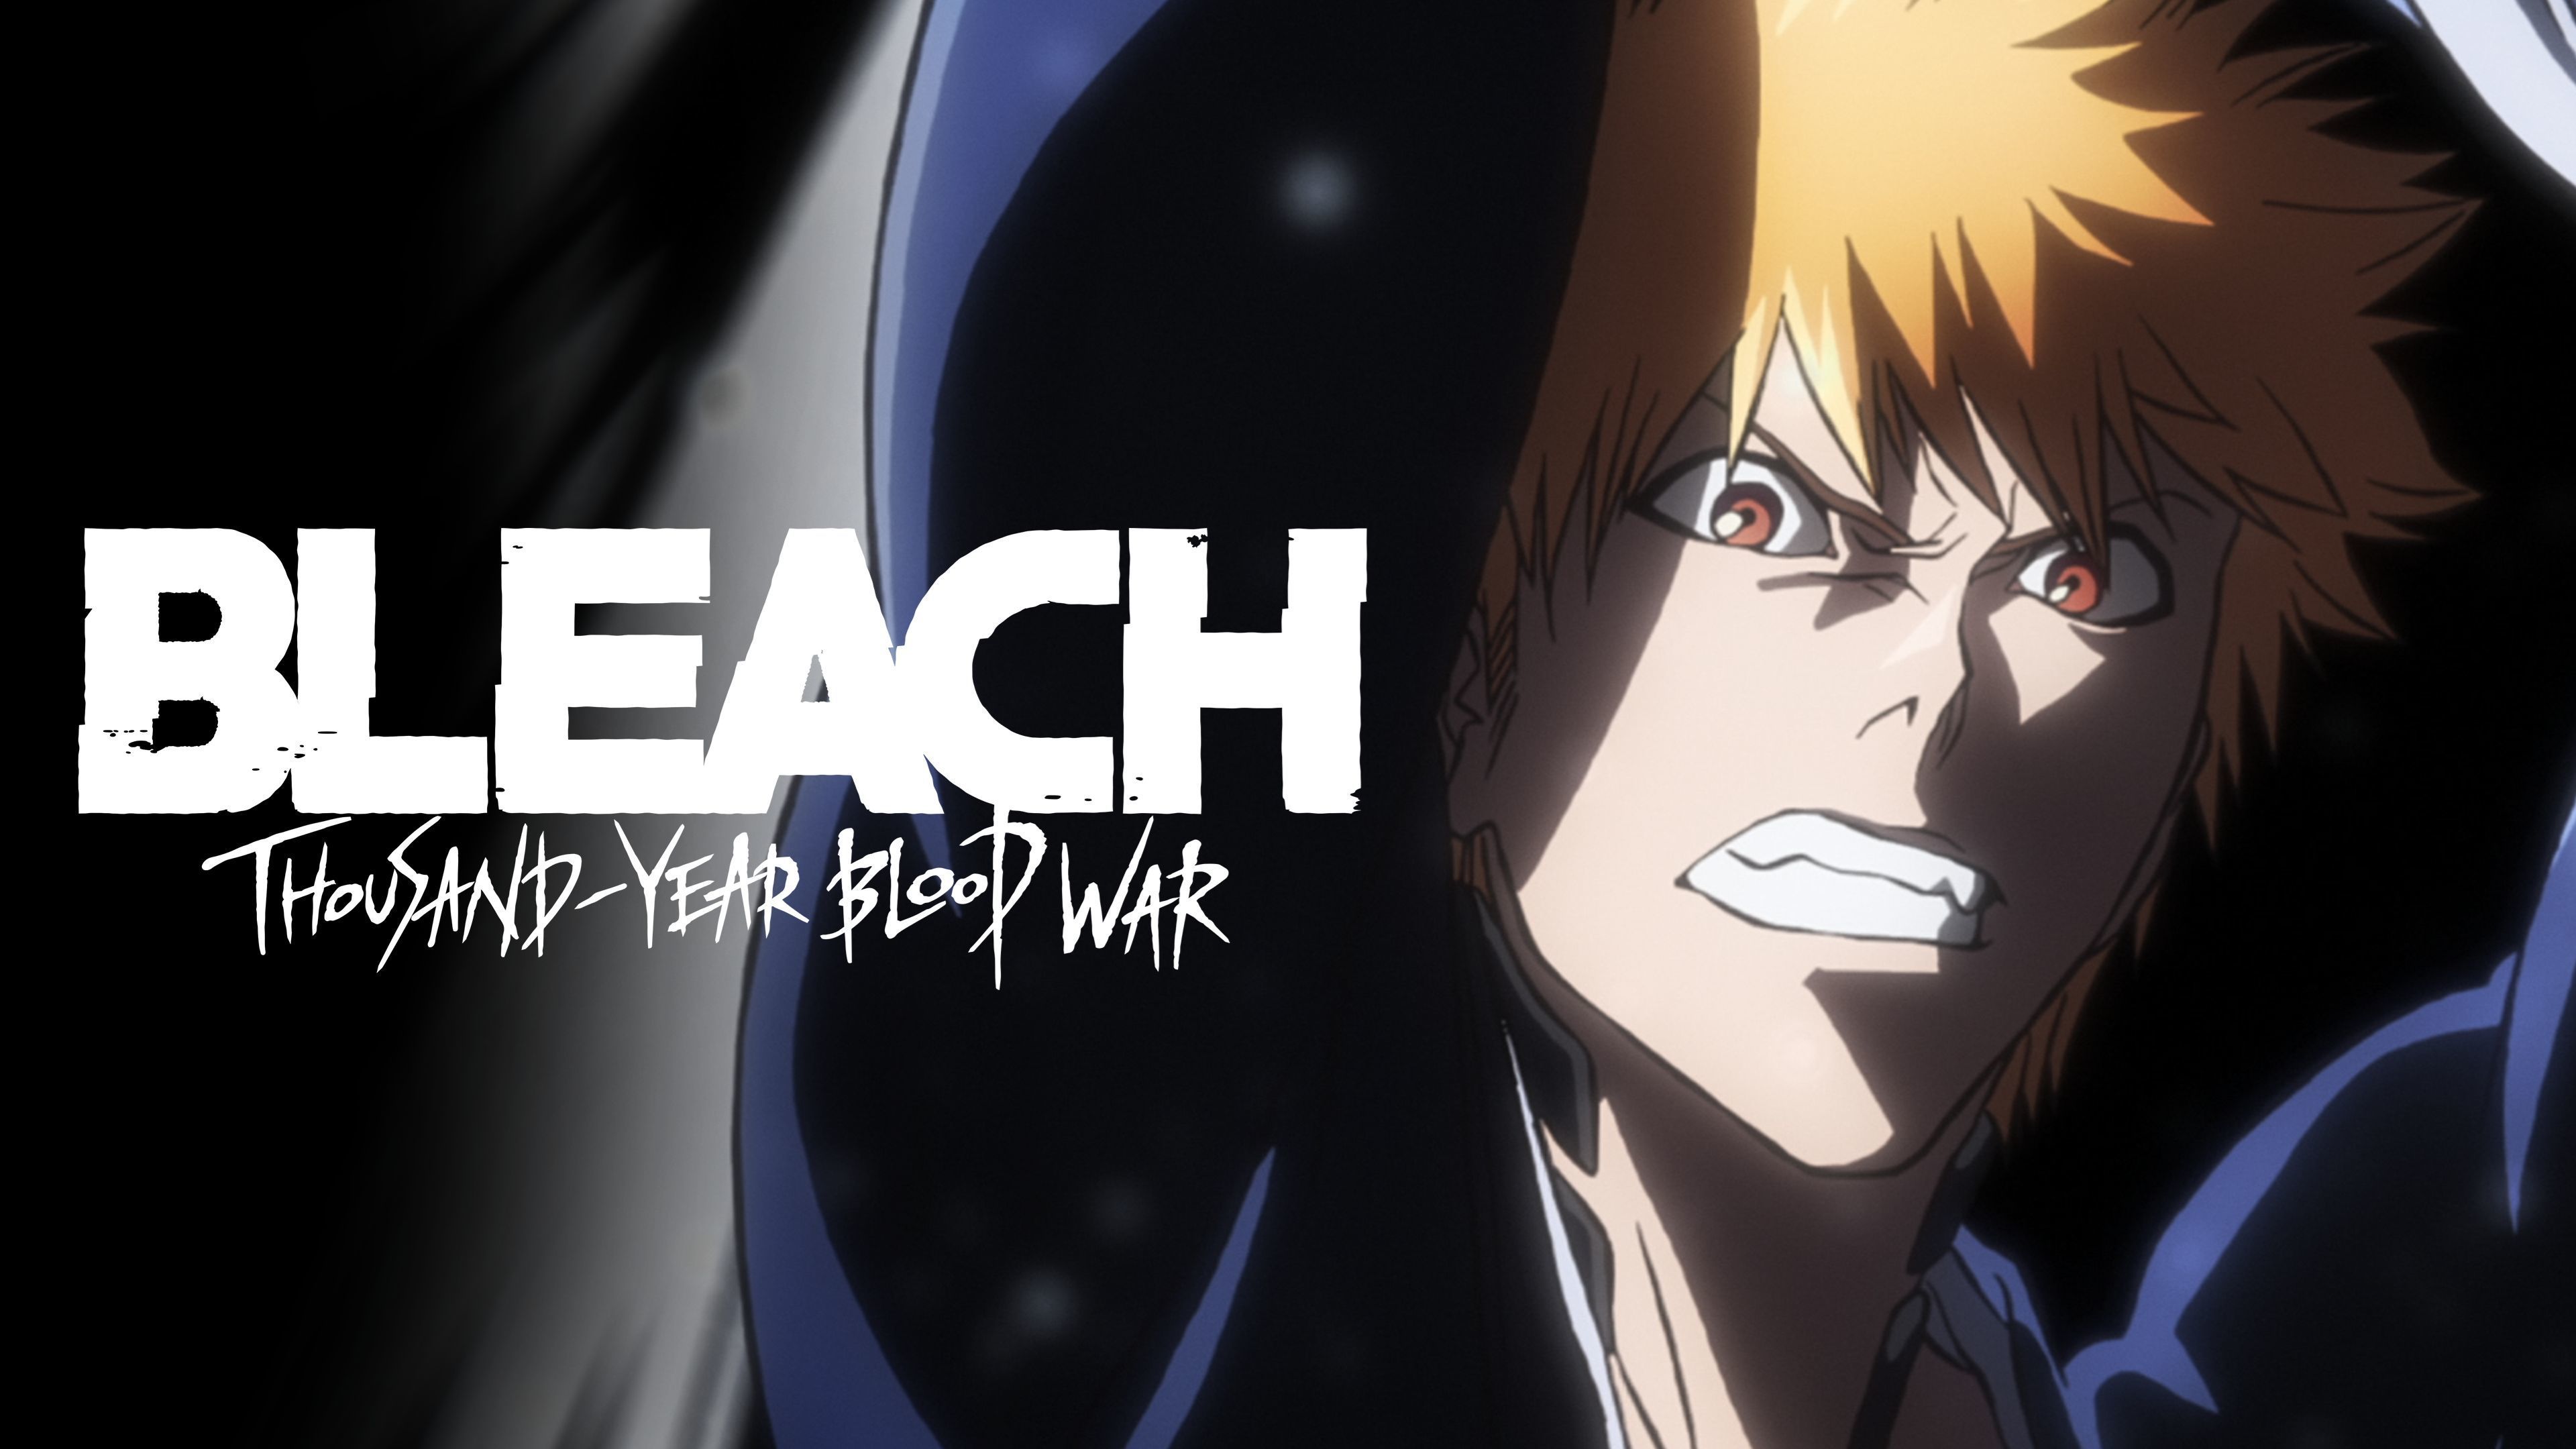 Druga część kultowego anime „Bleach: Thousand-Year Blood War” już dostępna na platformie Disney+